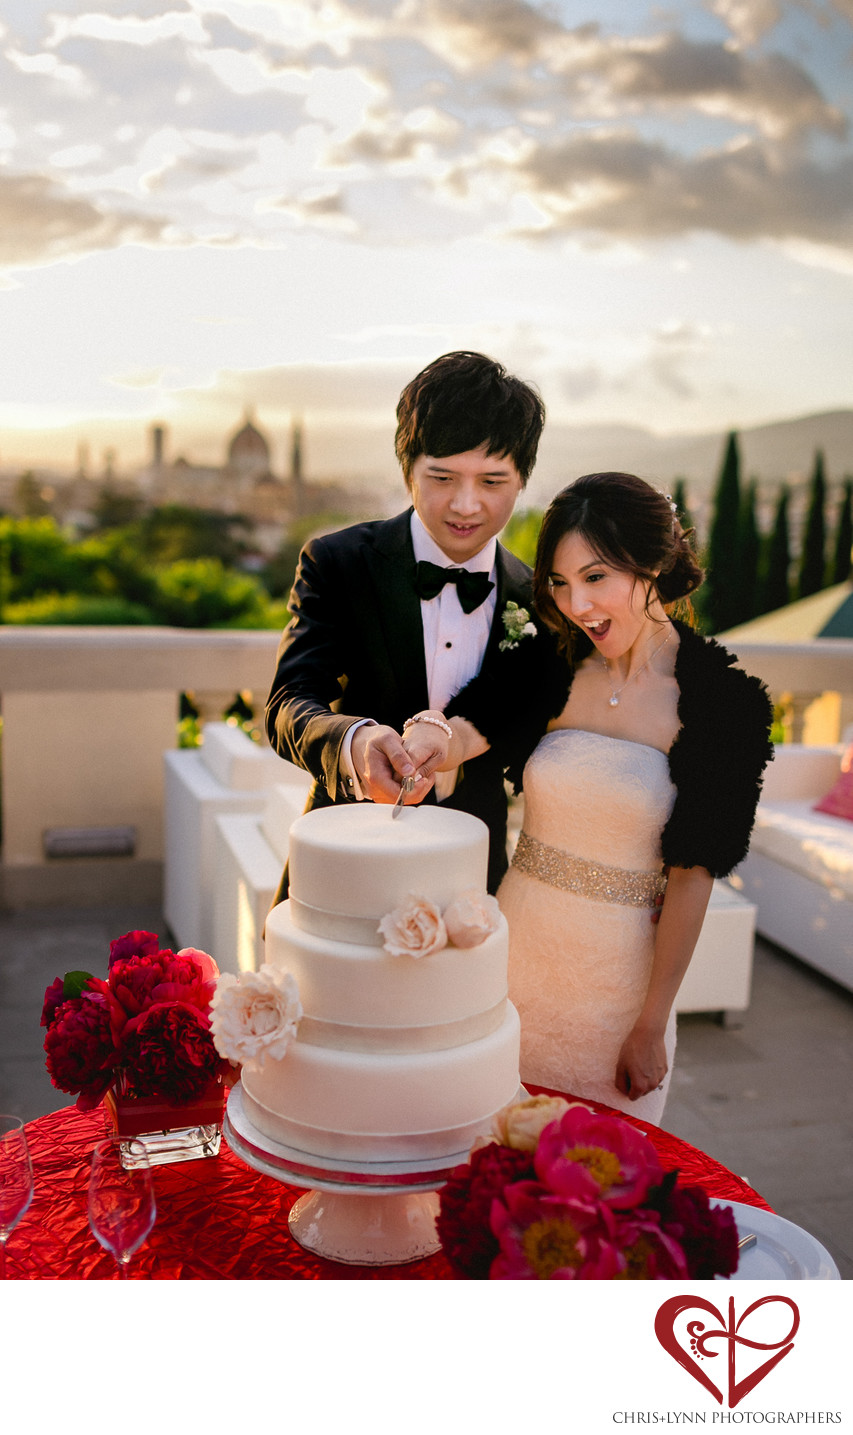 Villa La Vedetta Wedding reception, cake cutting